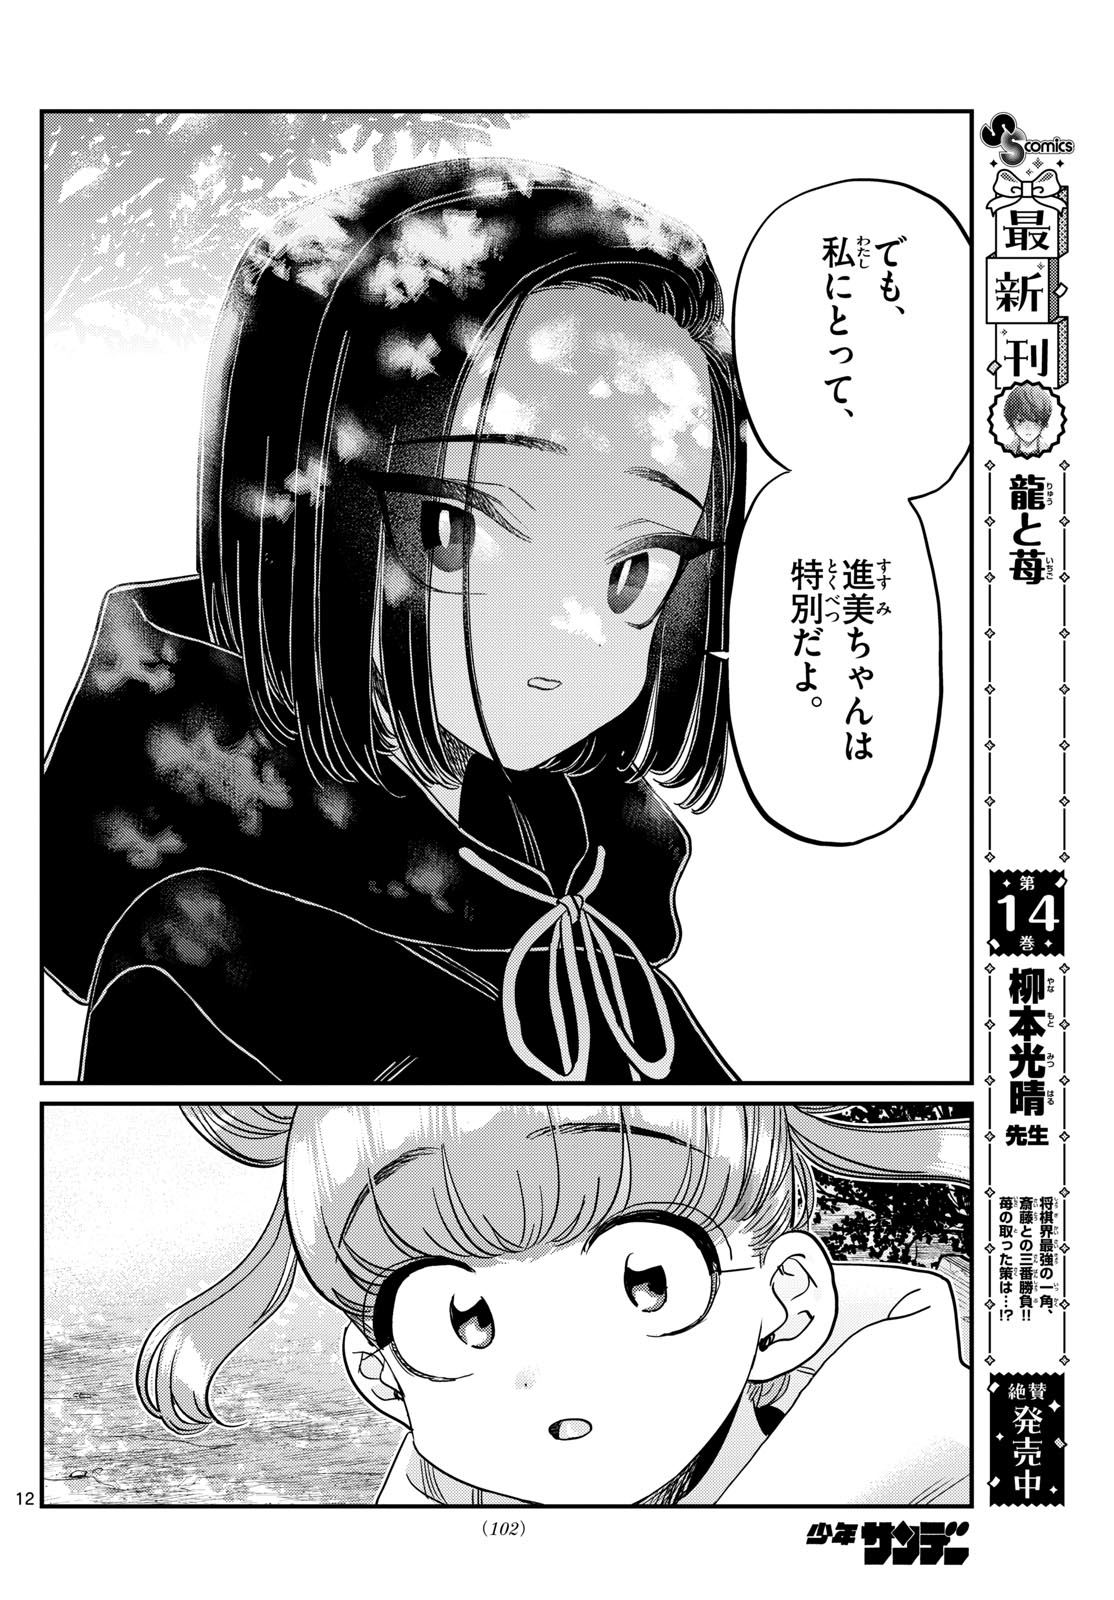 Komi-san wa Komyushou Desu - Chapter 435 - Page 12